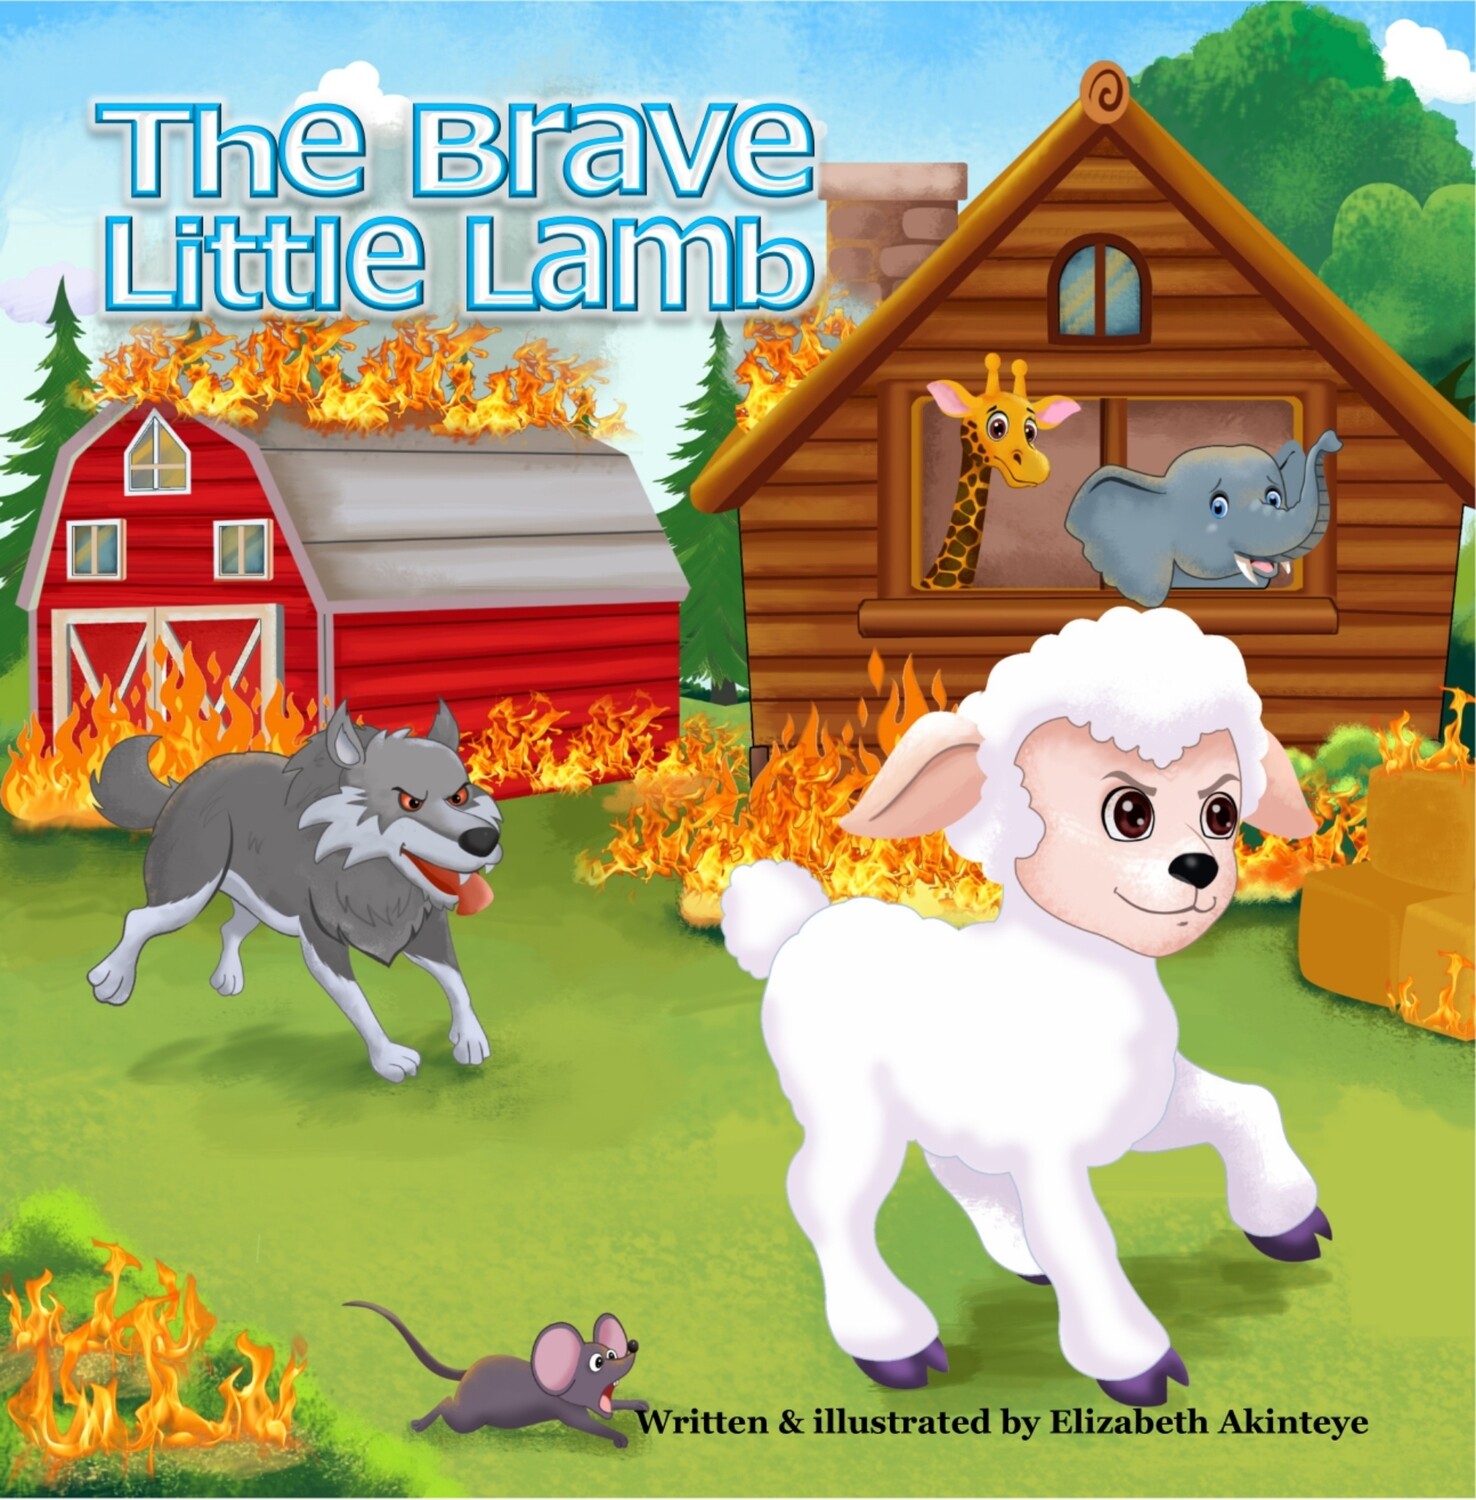 The Brave little Lamb by Elizabeth Akinteye ISBN 978-1916057401